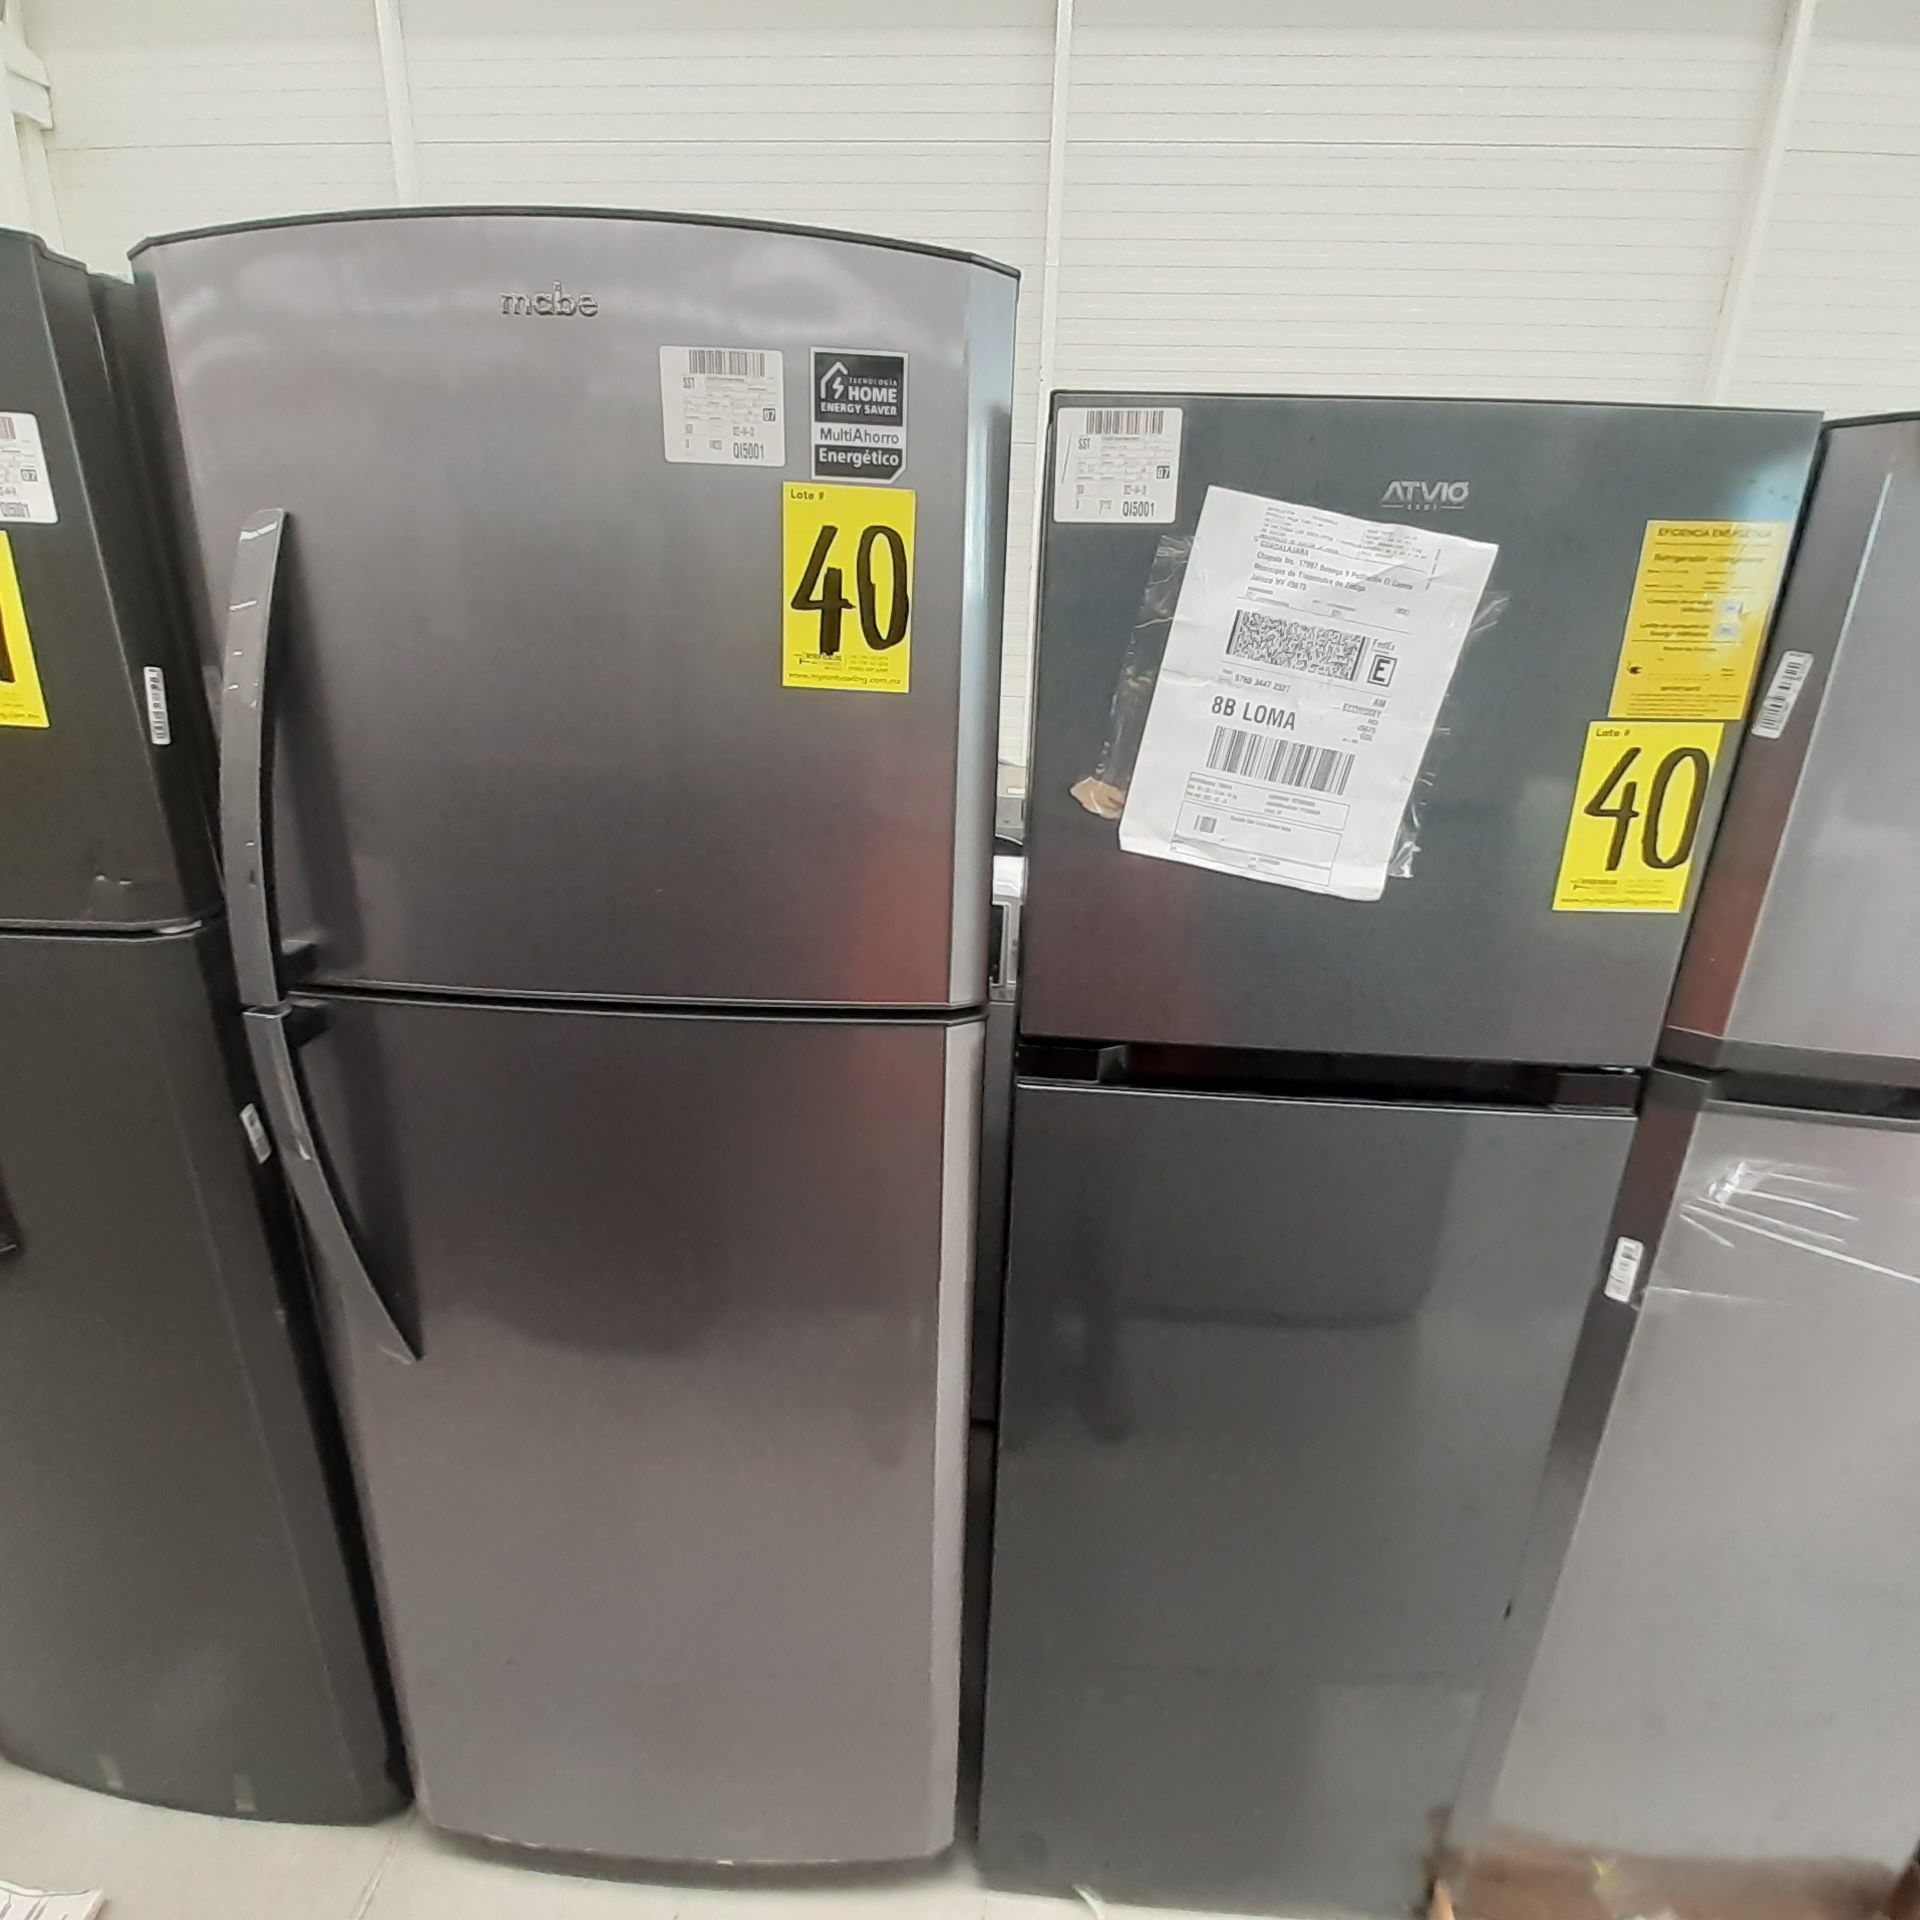 Lote De 2 Refrigeradores: 1 Refrigerador Marca Mabe, 1 Refrigerador Marca Atvio, Distintos Modelos - Image 5 of 23